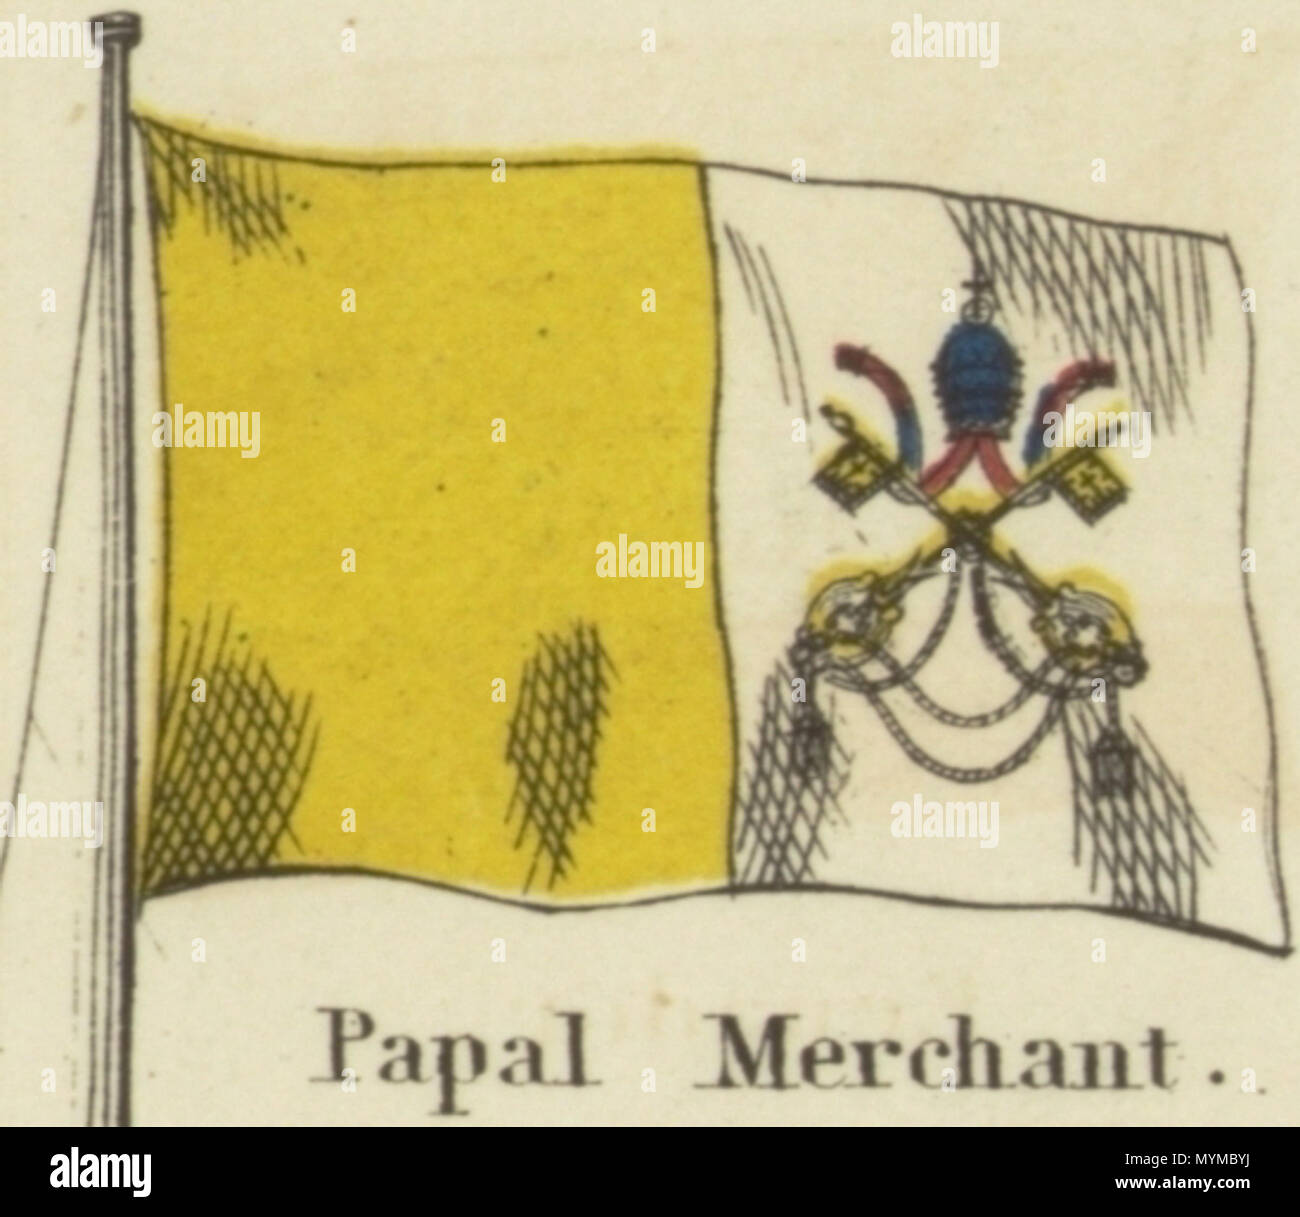 Anglais : Marchand papale. Johnson's carte nouvelle des emblèmes nationaux,  1868.jpg Johnson dans les tableau des emblèmes nationaux. Imprimer montrant  les drapeaux de divers pays, ceux effectués par les navires, et